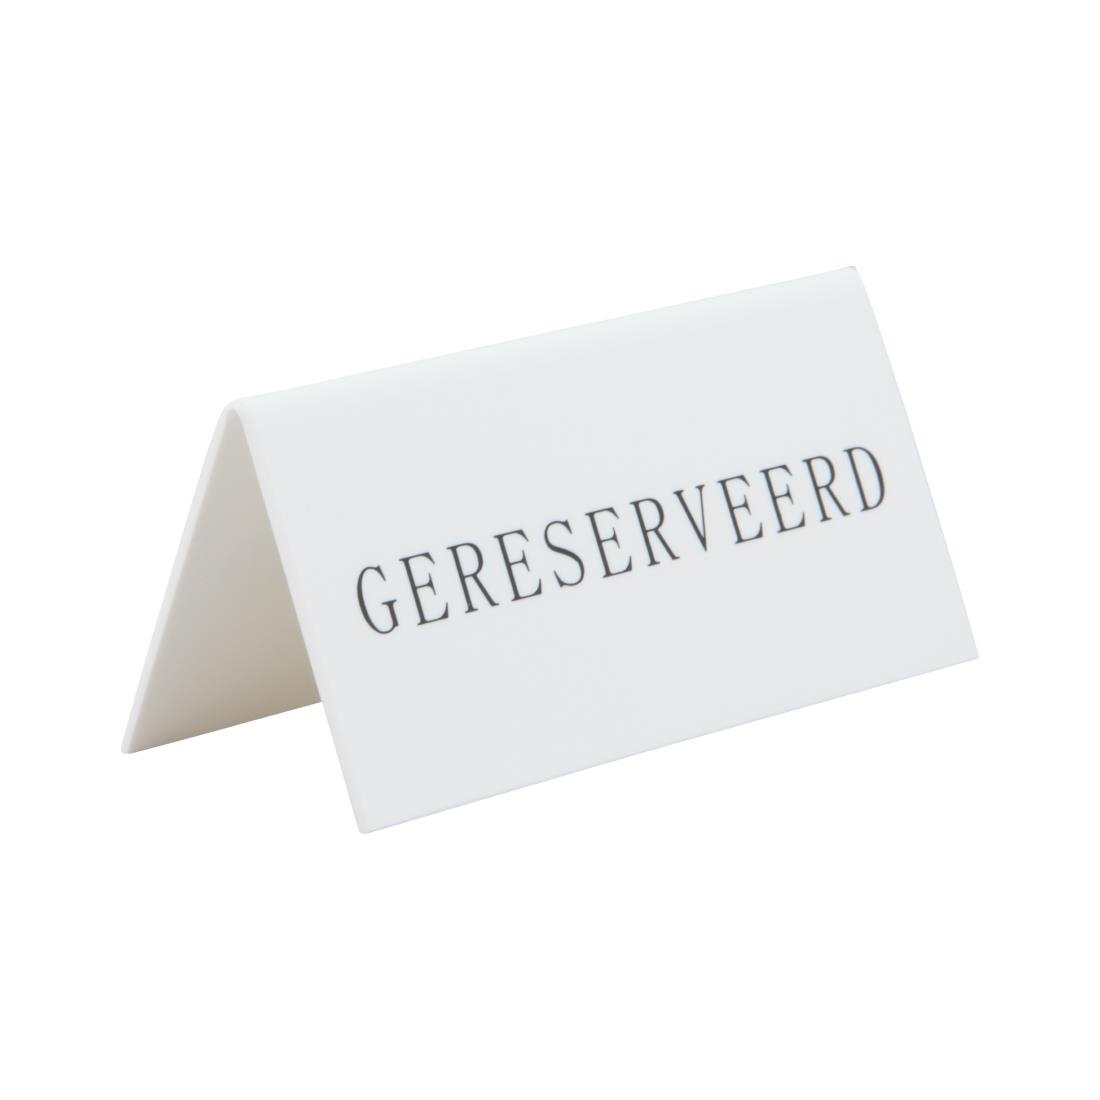 Securit Reservering tafelstandaards met Nederlands: 'Gereserveerd' Wit Acryl standaarden met zwart lettertype (box 5)